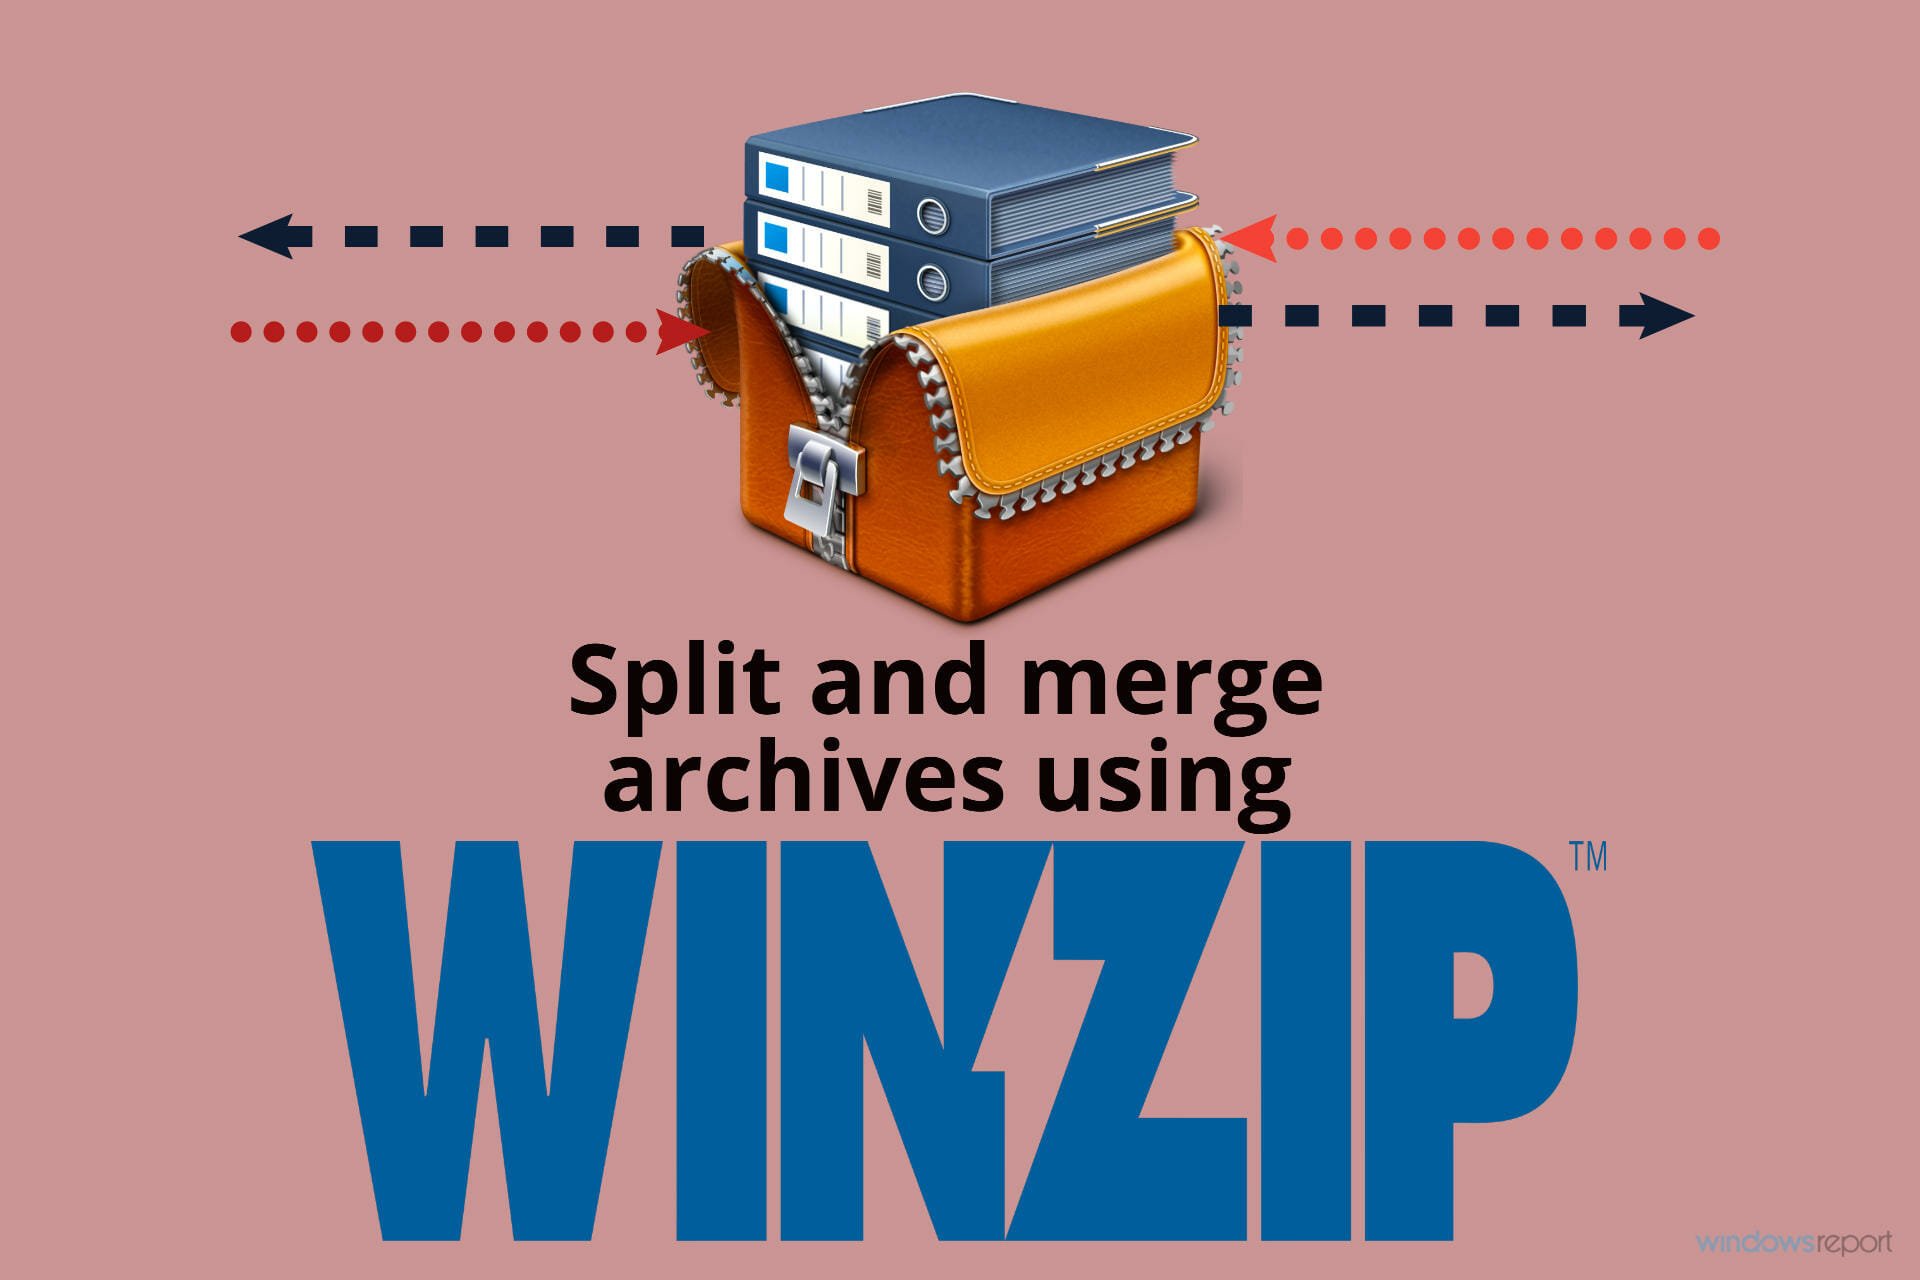 ¿Cómo puedo fusionar y dividir archivos usando WinZip?